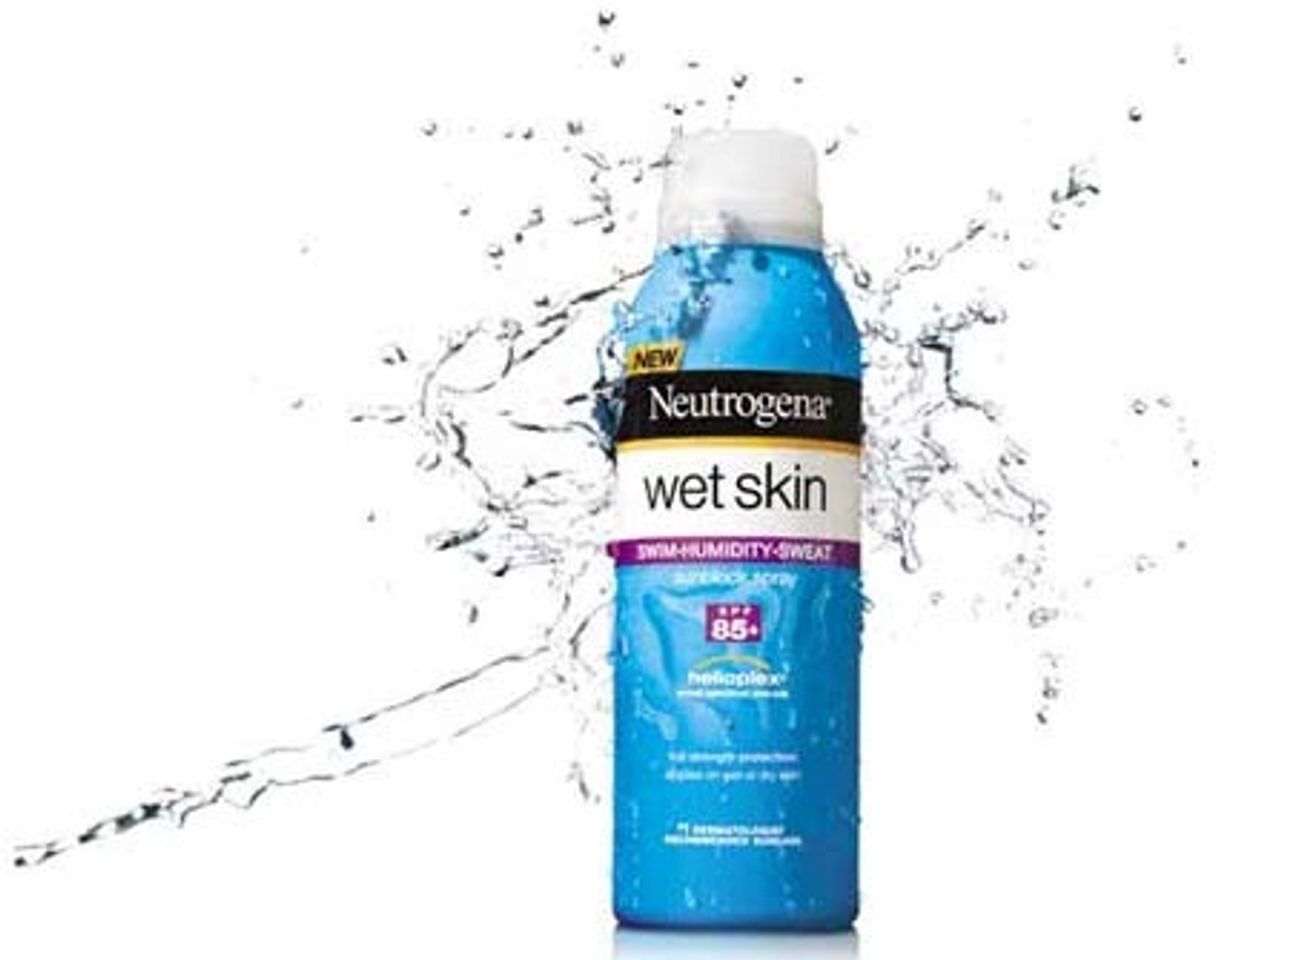 Neutrogena Wet Skin Sunblock SPF85+ giúp bảo vệ làn da bạn suốt cả ngày